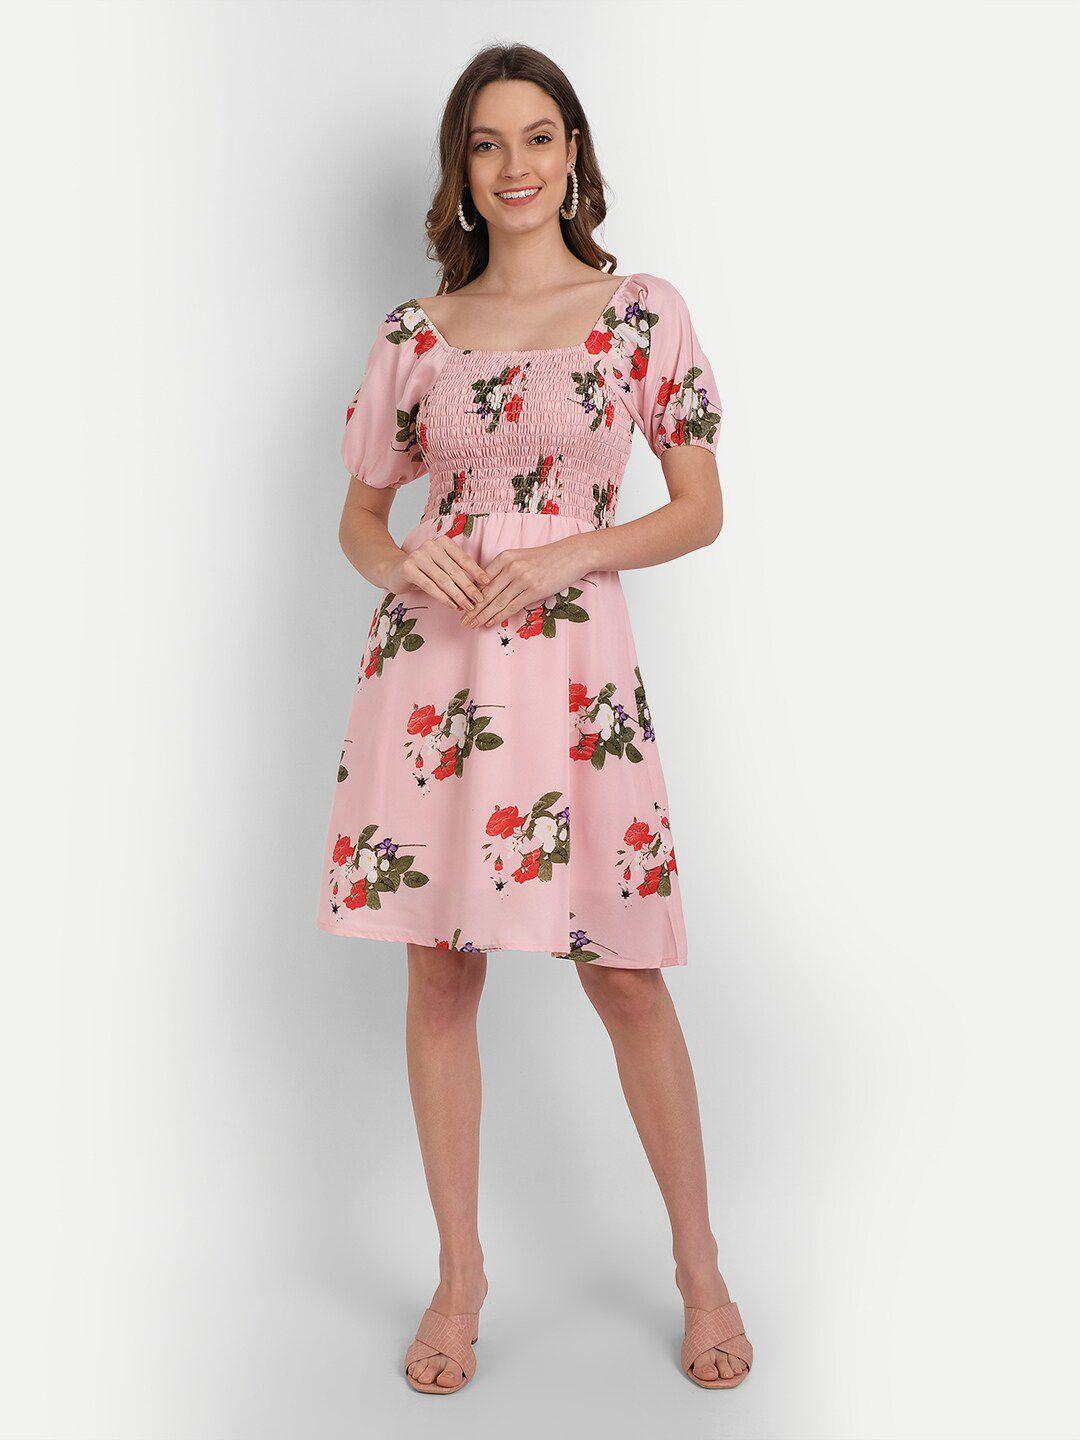 rediscover fashion pink floral smocked crepe dress